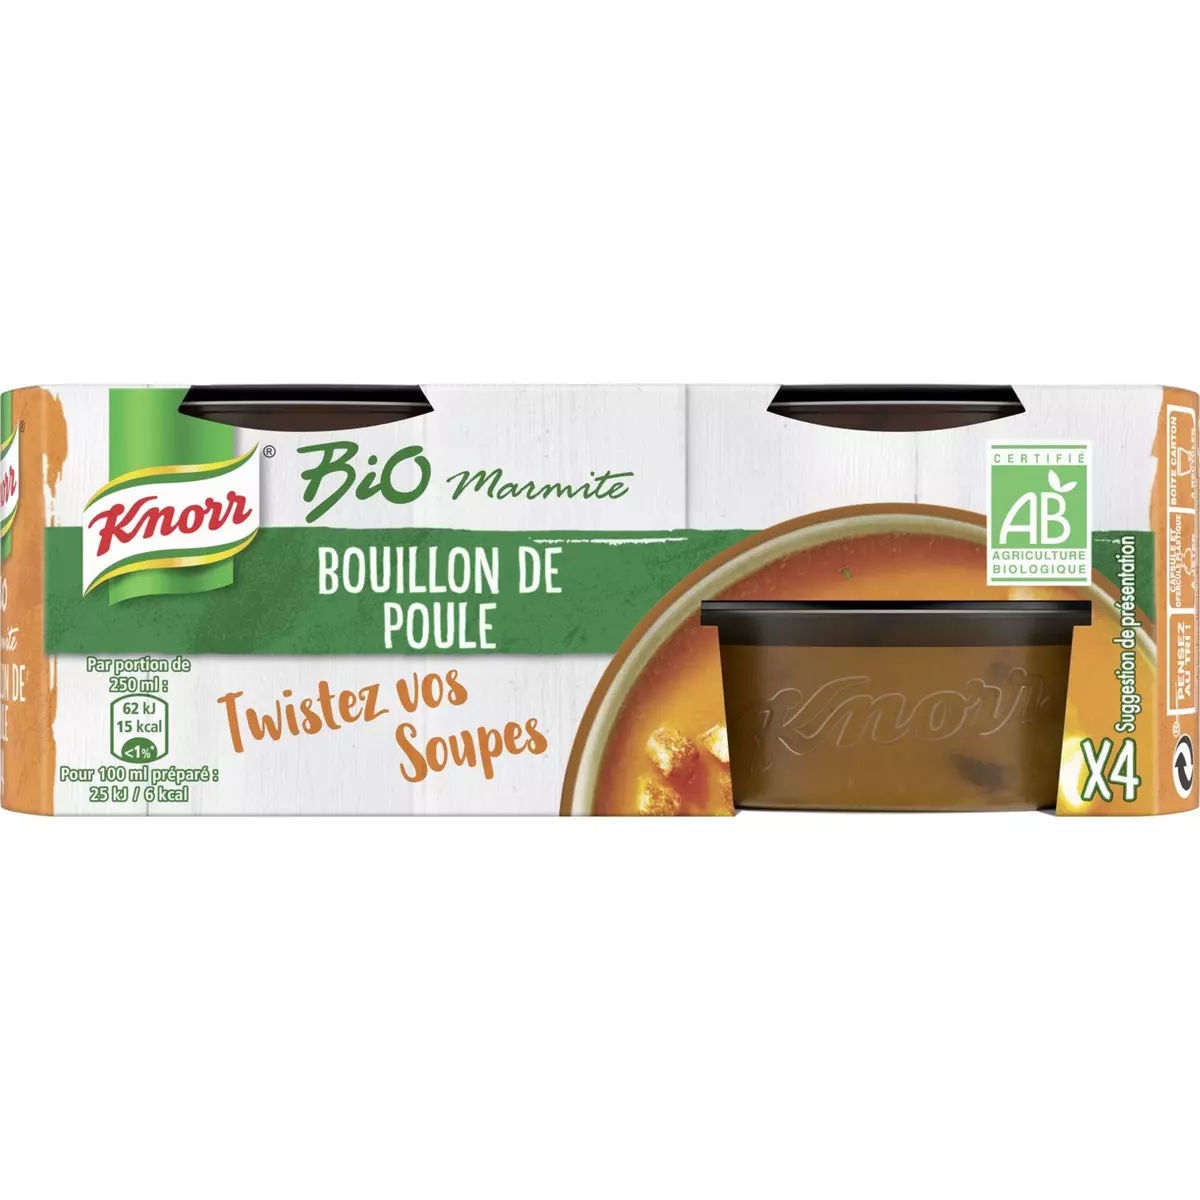 KNORR Marmite de bouillon de poule bio 4 portions 104g